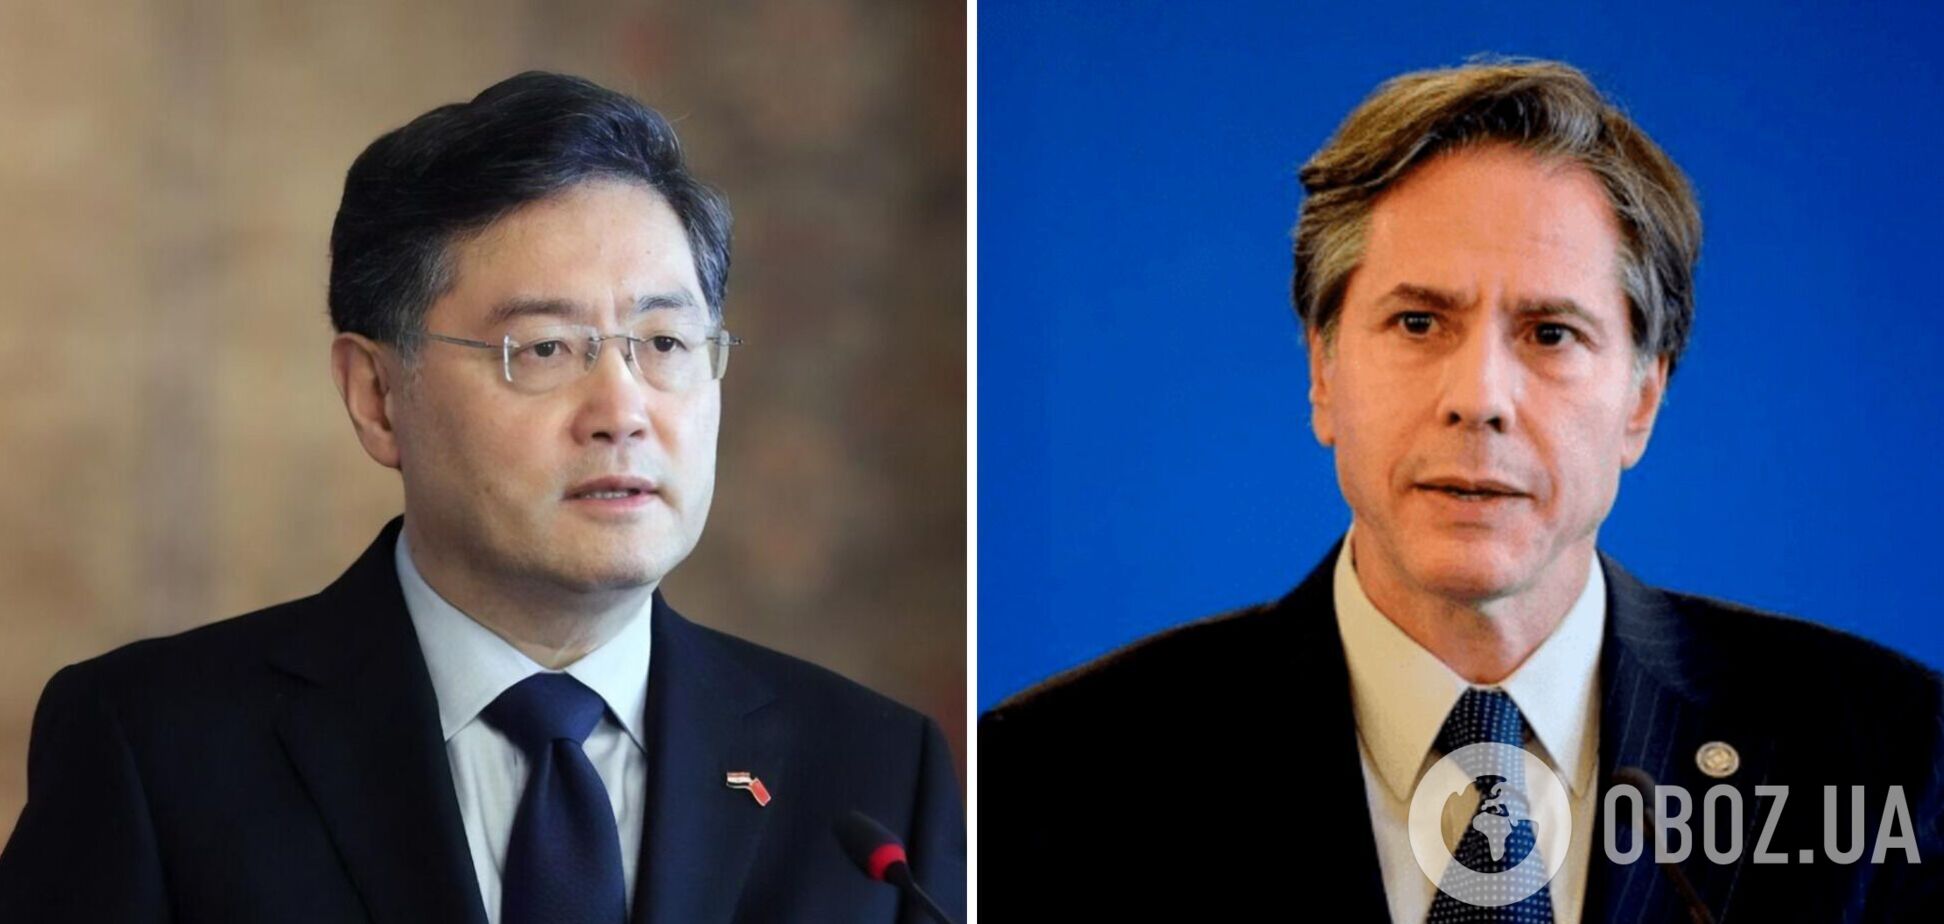 Блинкен провел 'откровенные и содержательные переговоры' с топ-чиновником Китая: шла ли речь об Украине